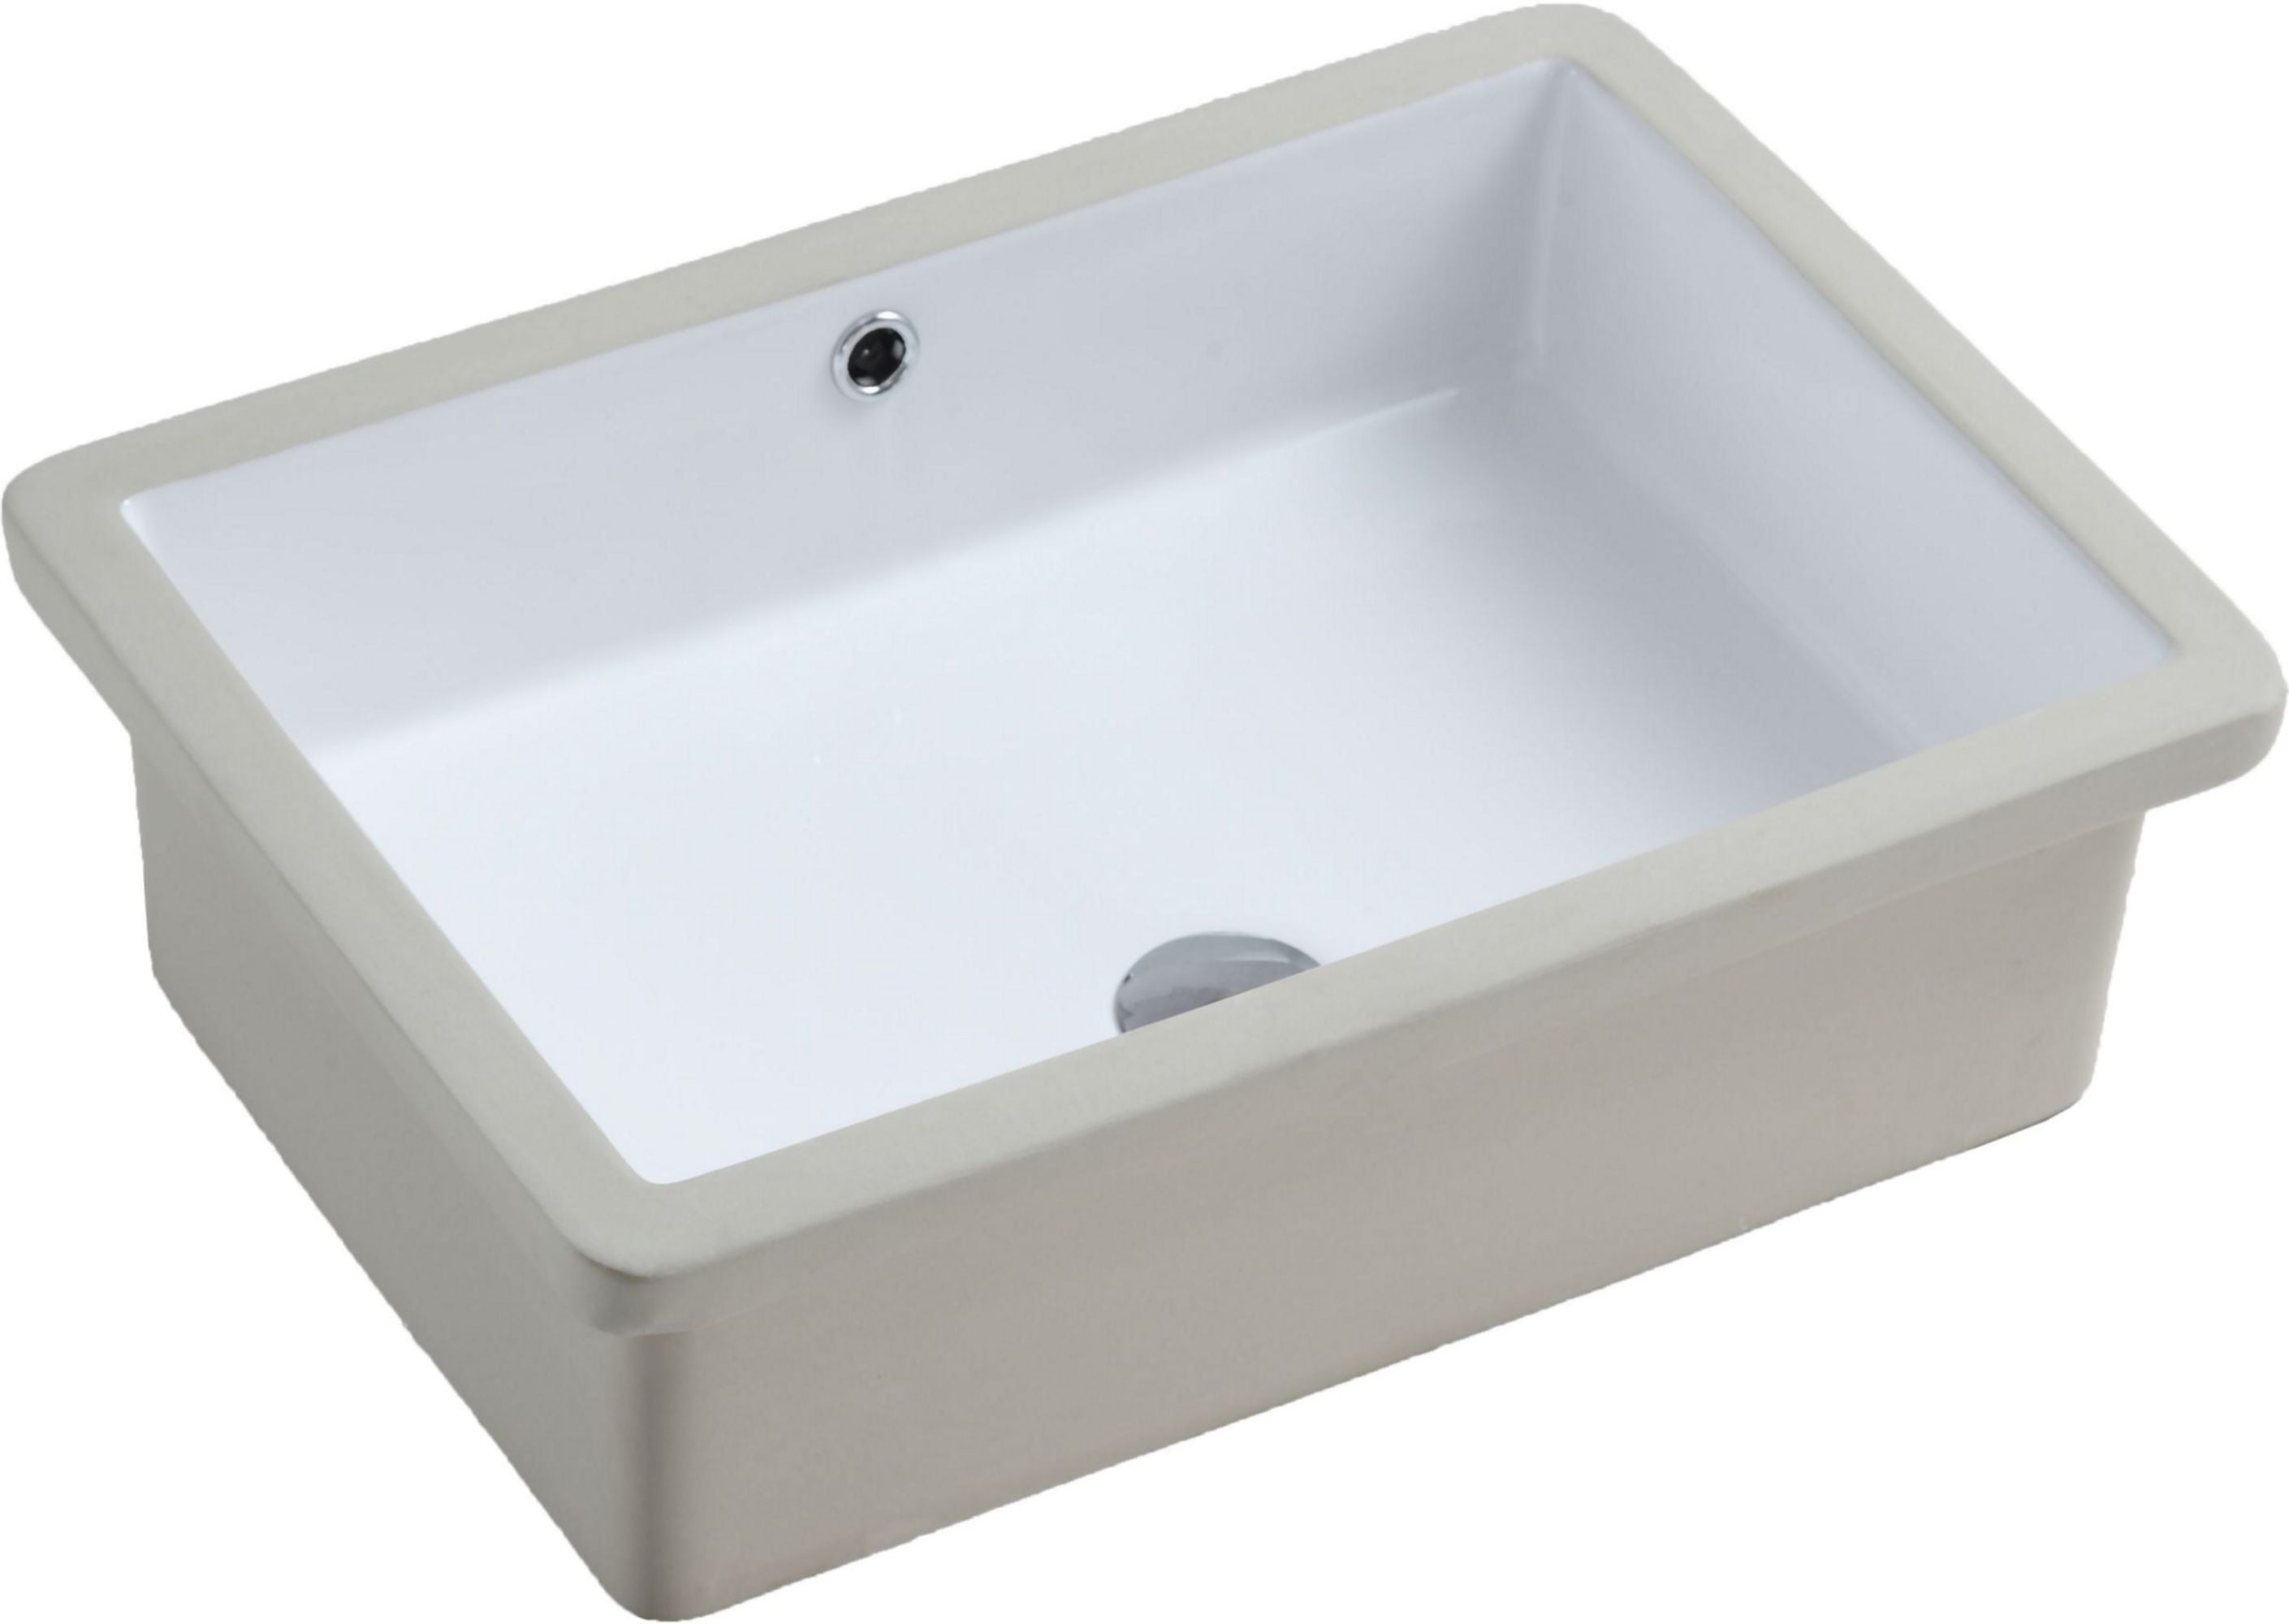 Picture of A & E Bath UCB-2216 Isla Undermount Ceramic Basin Sink&#44; Glossy White - 21.62 x 15.56 x 6.68 in.